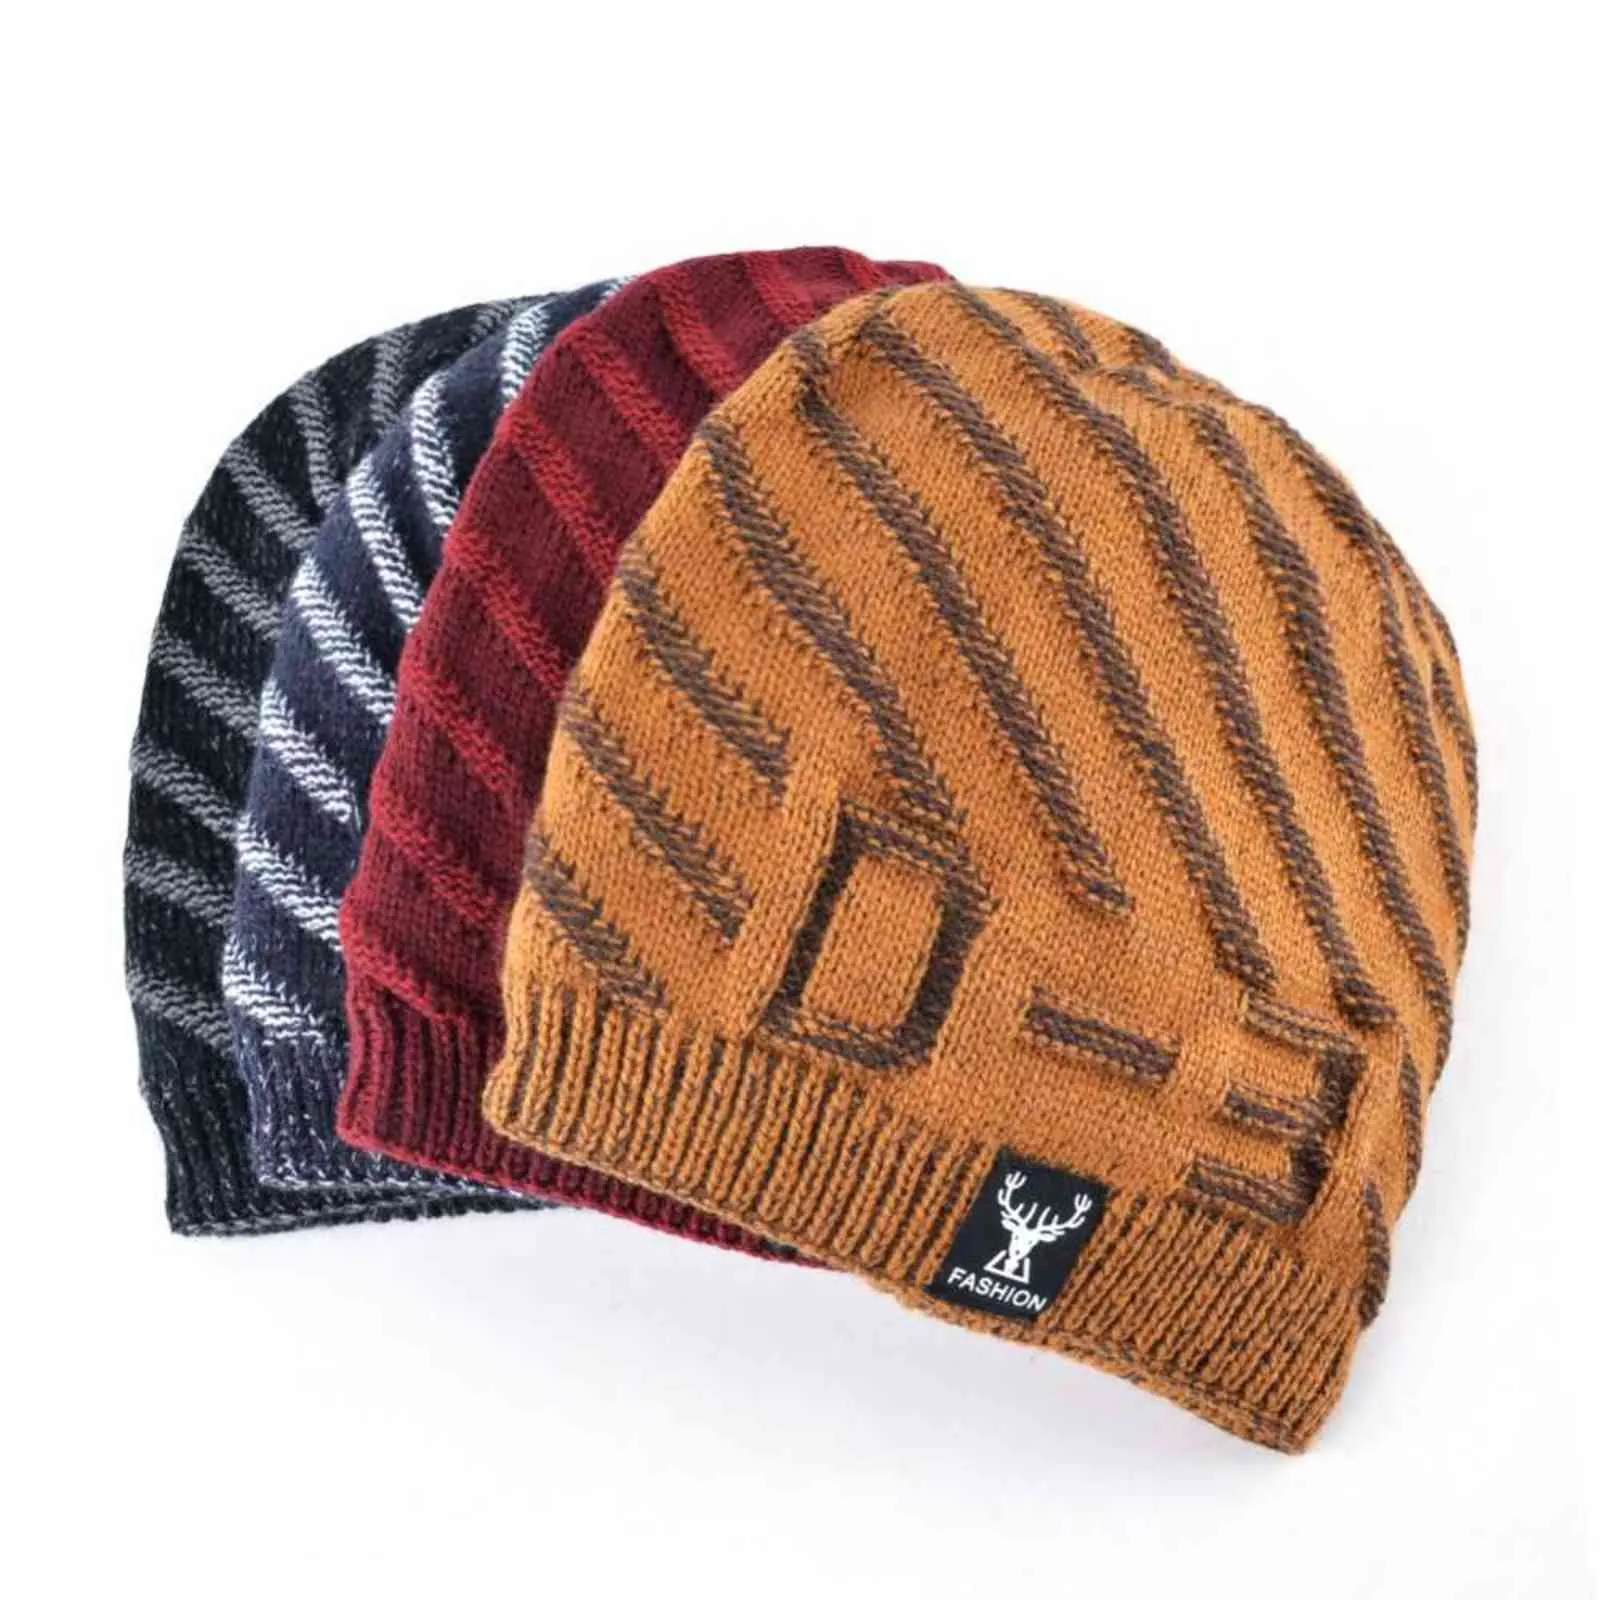 TQMSMY 2018 Beanies Knit Männer Winter Hut Caps Skullies Bonnet hinzufügen samt Hüte Für Männer Frauen Beanie Warme Baggy Gestrickte hut TMD29 Y21111